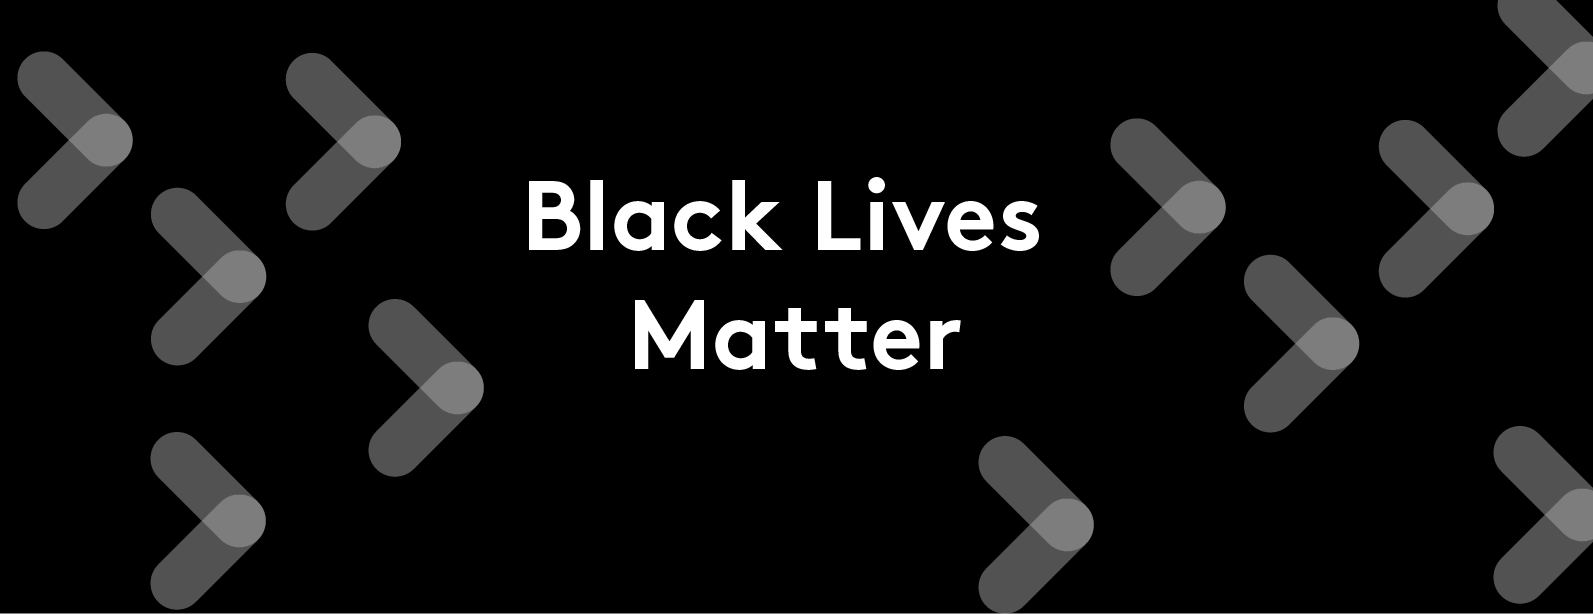 No lives matter if black lives don’t